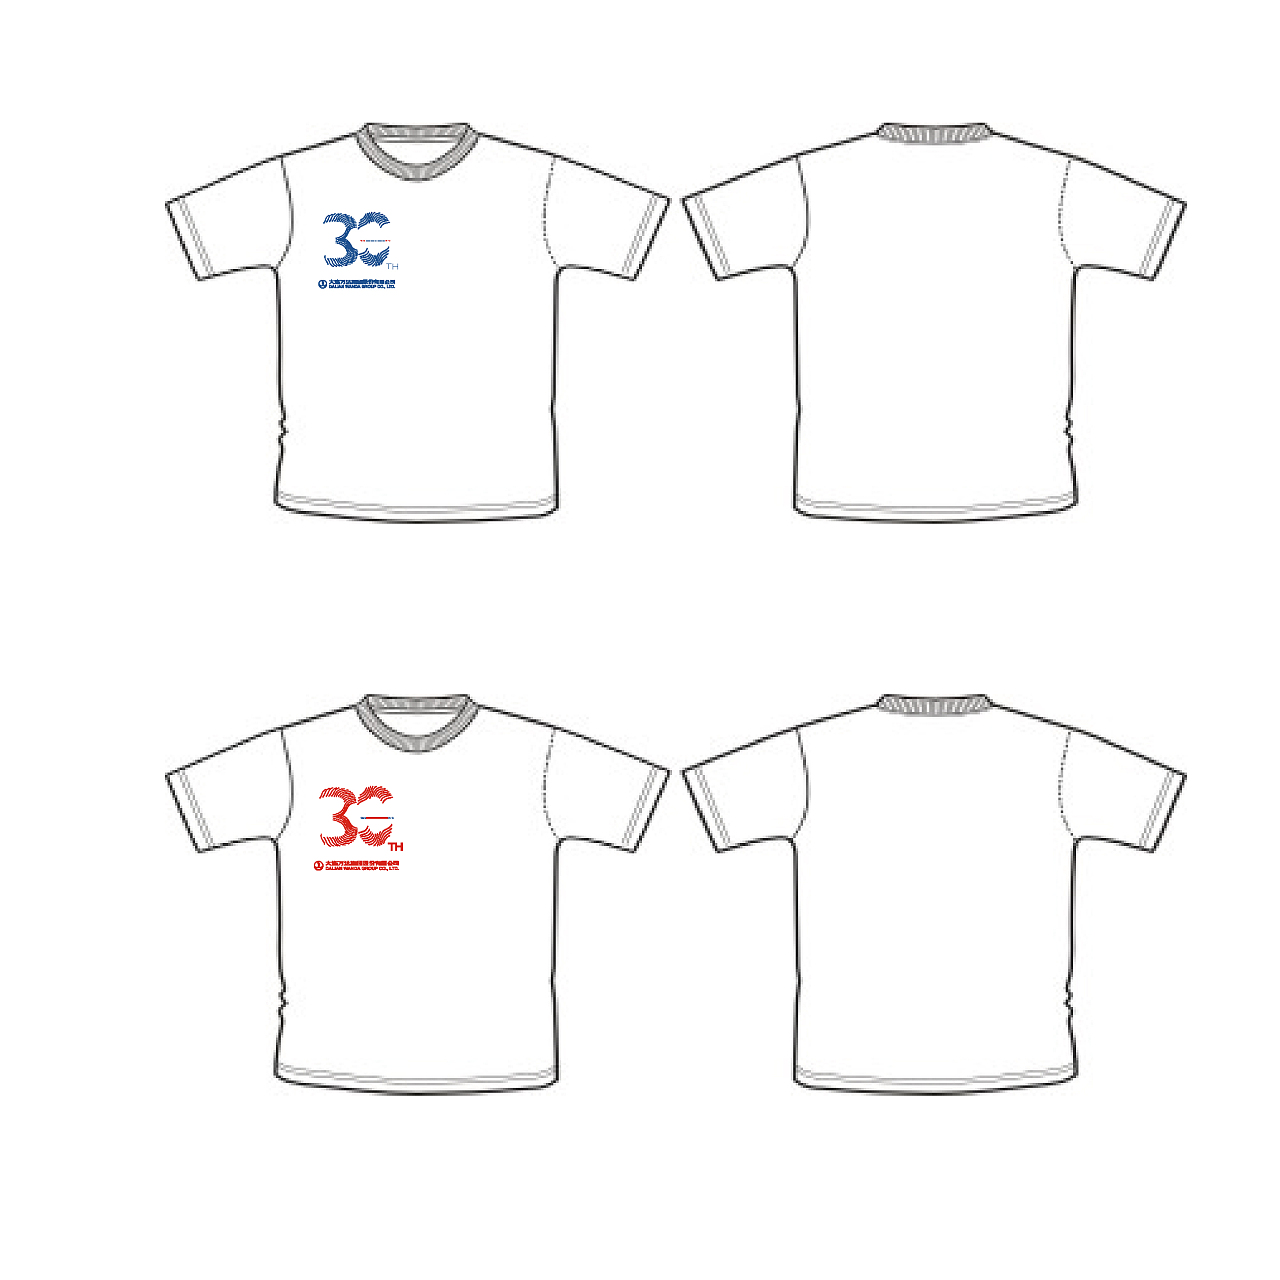 将LOGO运用在T-Shirt上的效果图